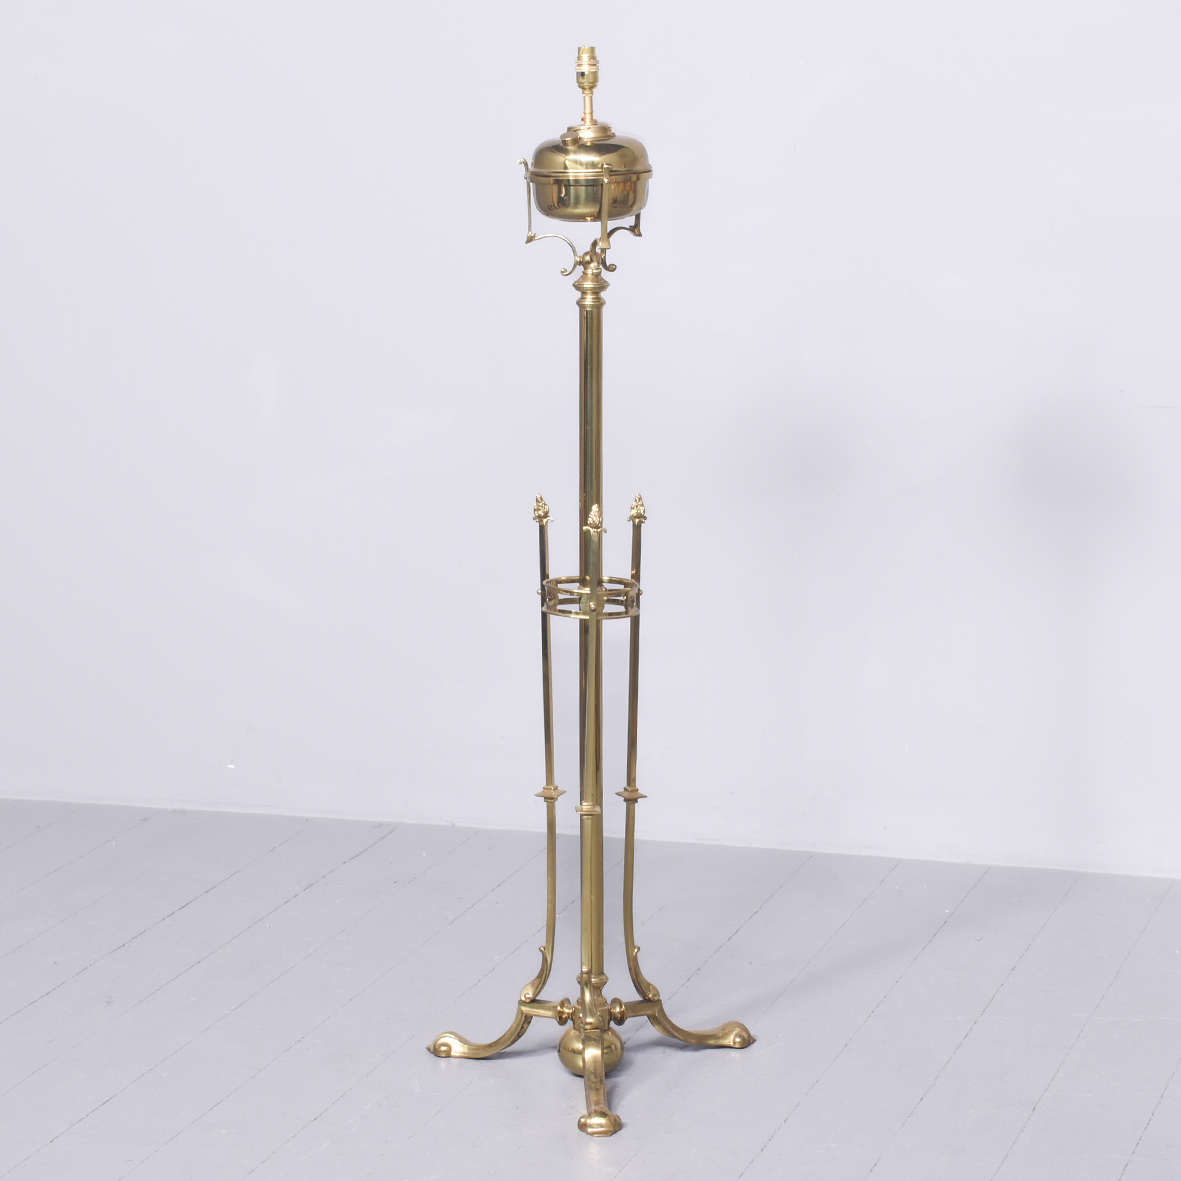 Brass and Cast Brass Standard Lamp standard lamp Antique Lighting